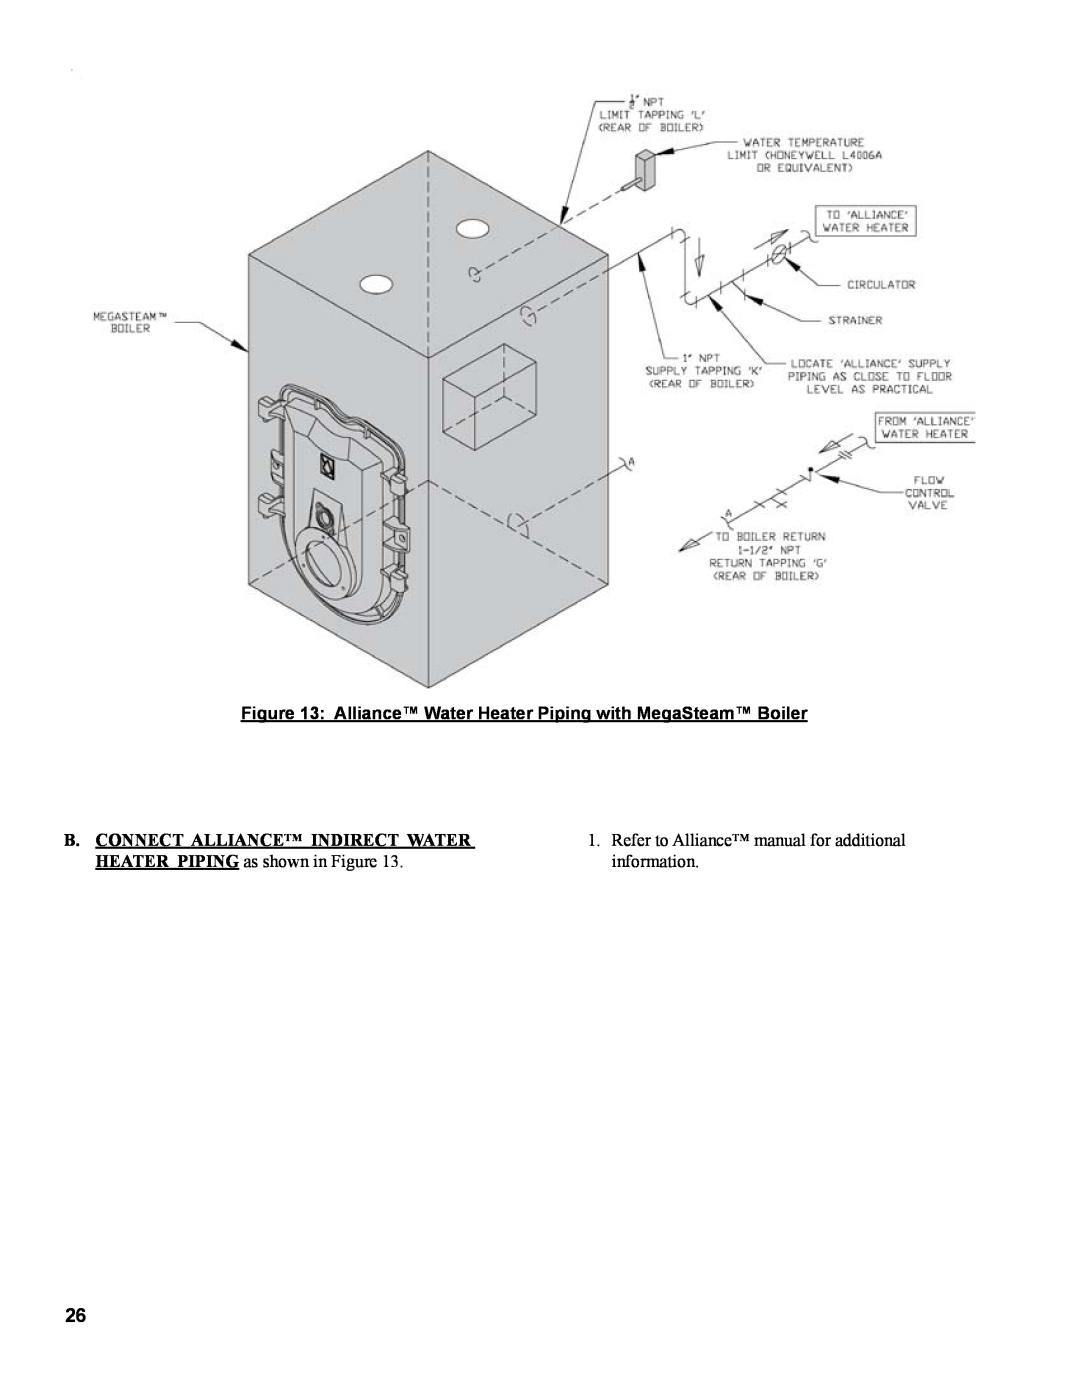 Burnham MST629, MST288, MST396, MST513 manual Alliance Water Heater Piping with MegaSteam Boiler 